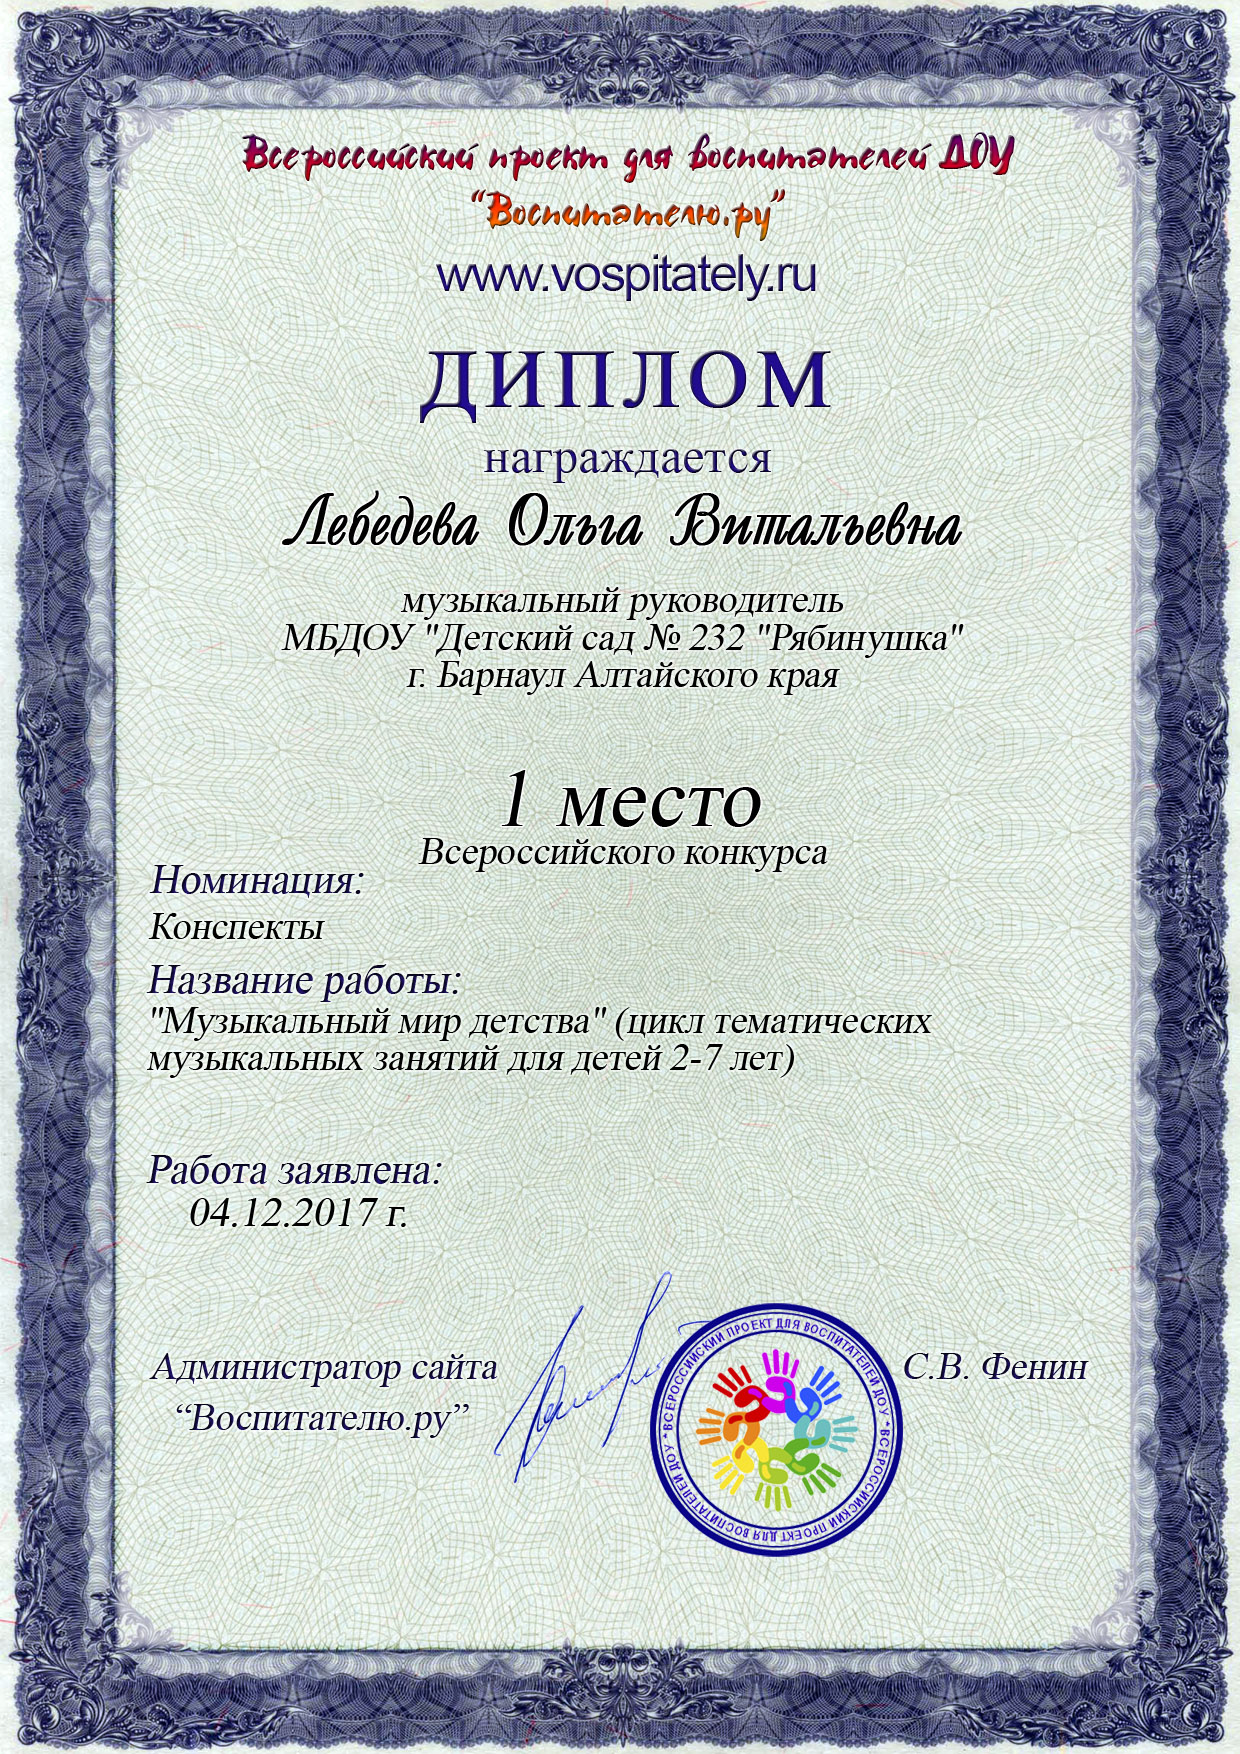 Диплом-конкурса-Воспитателю.ру-2017г